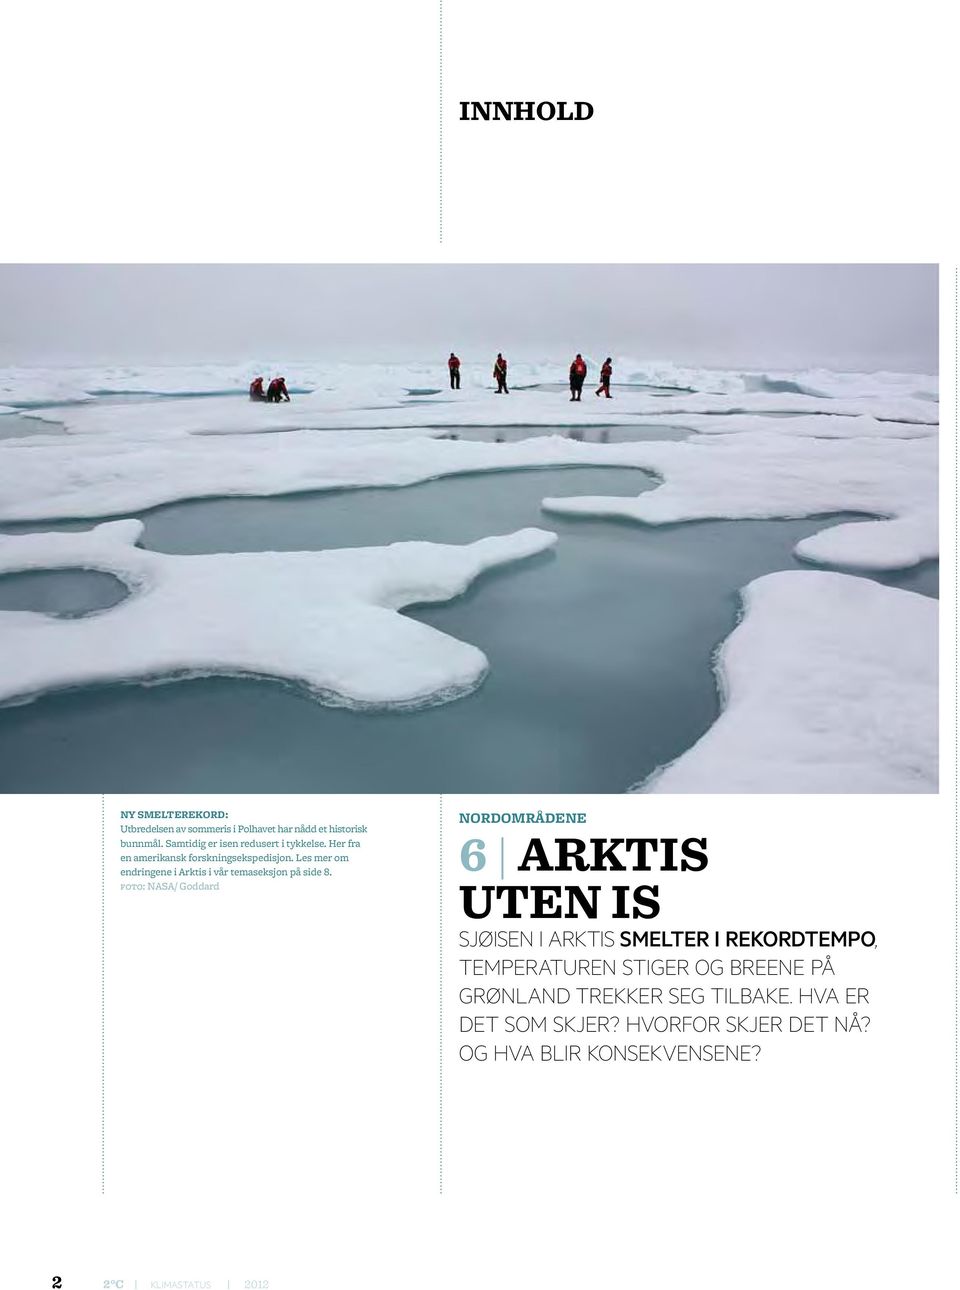 Les mer om endringene i Arktis i vår temaseksjon på side 8.